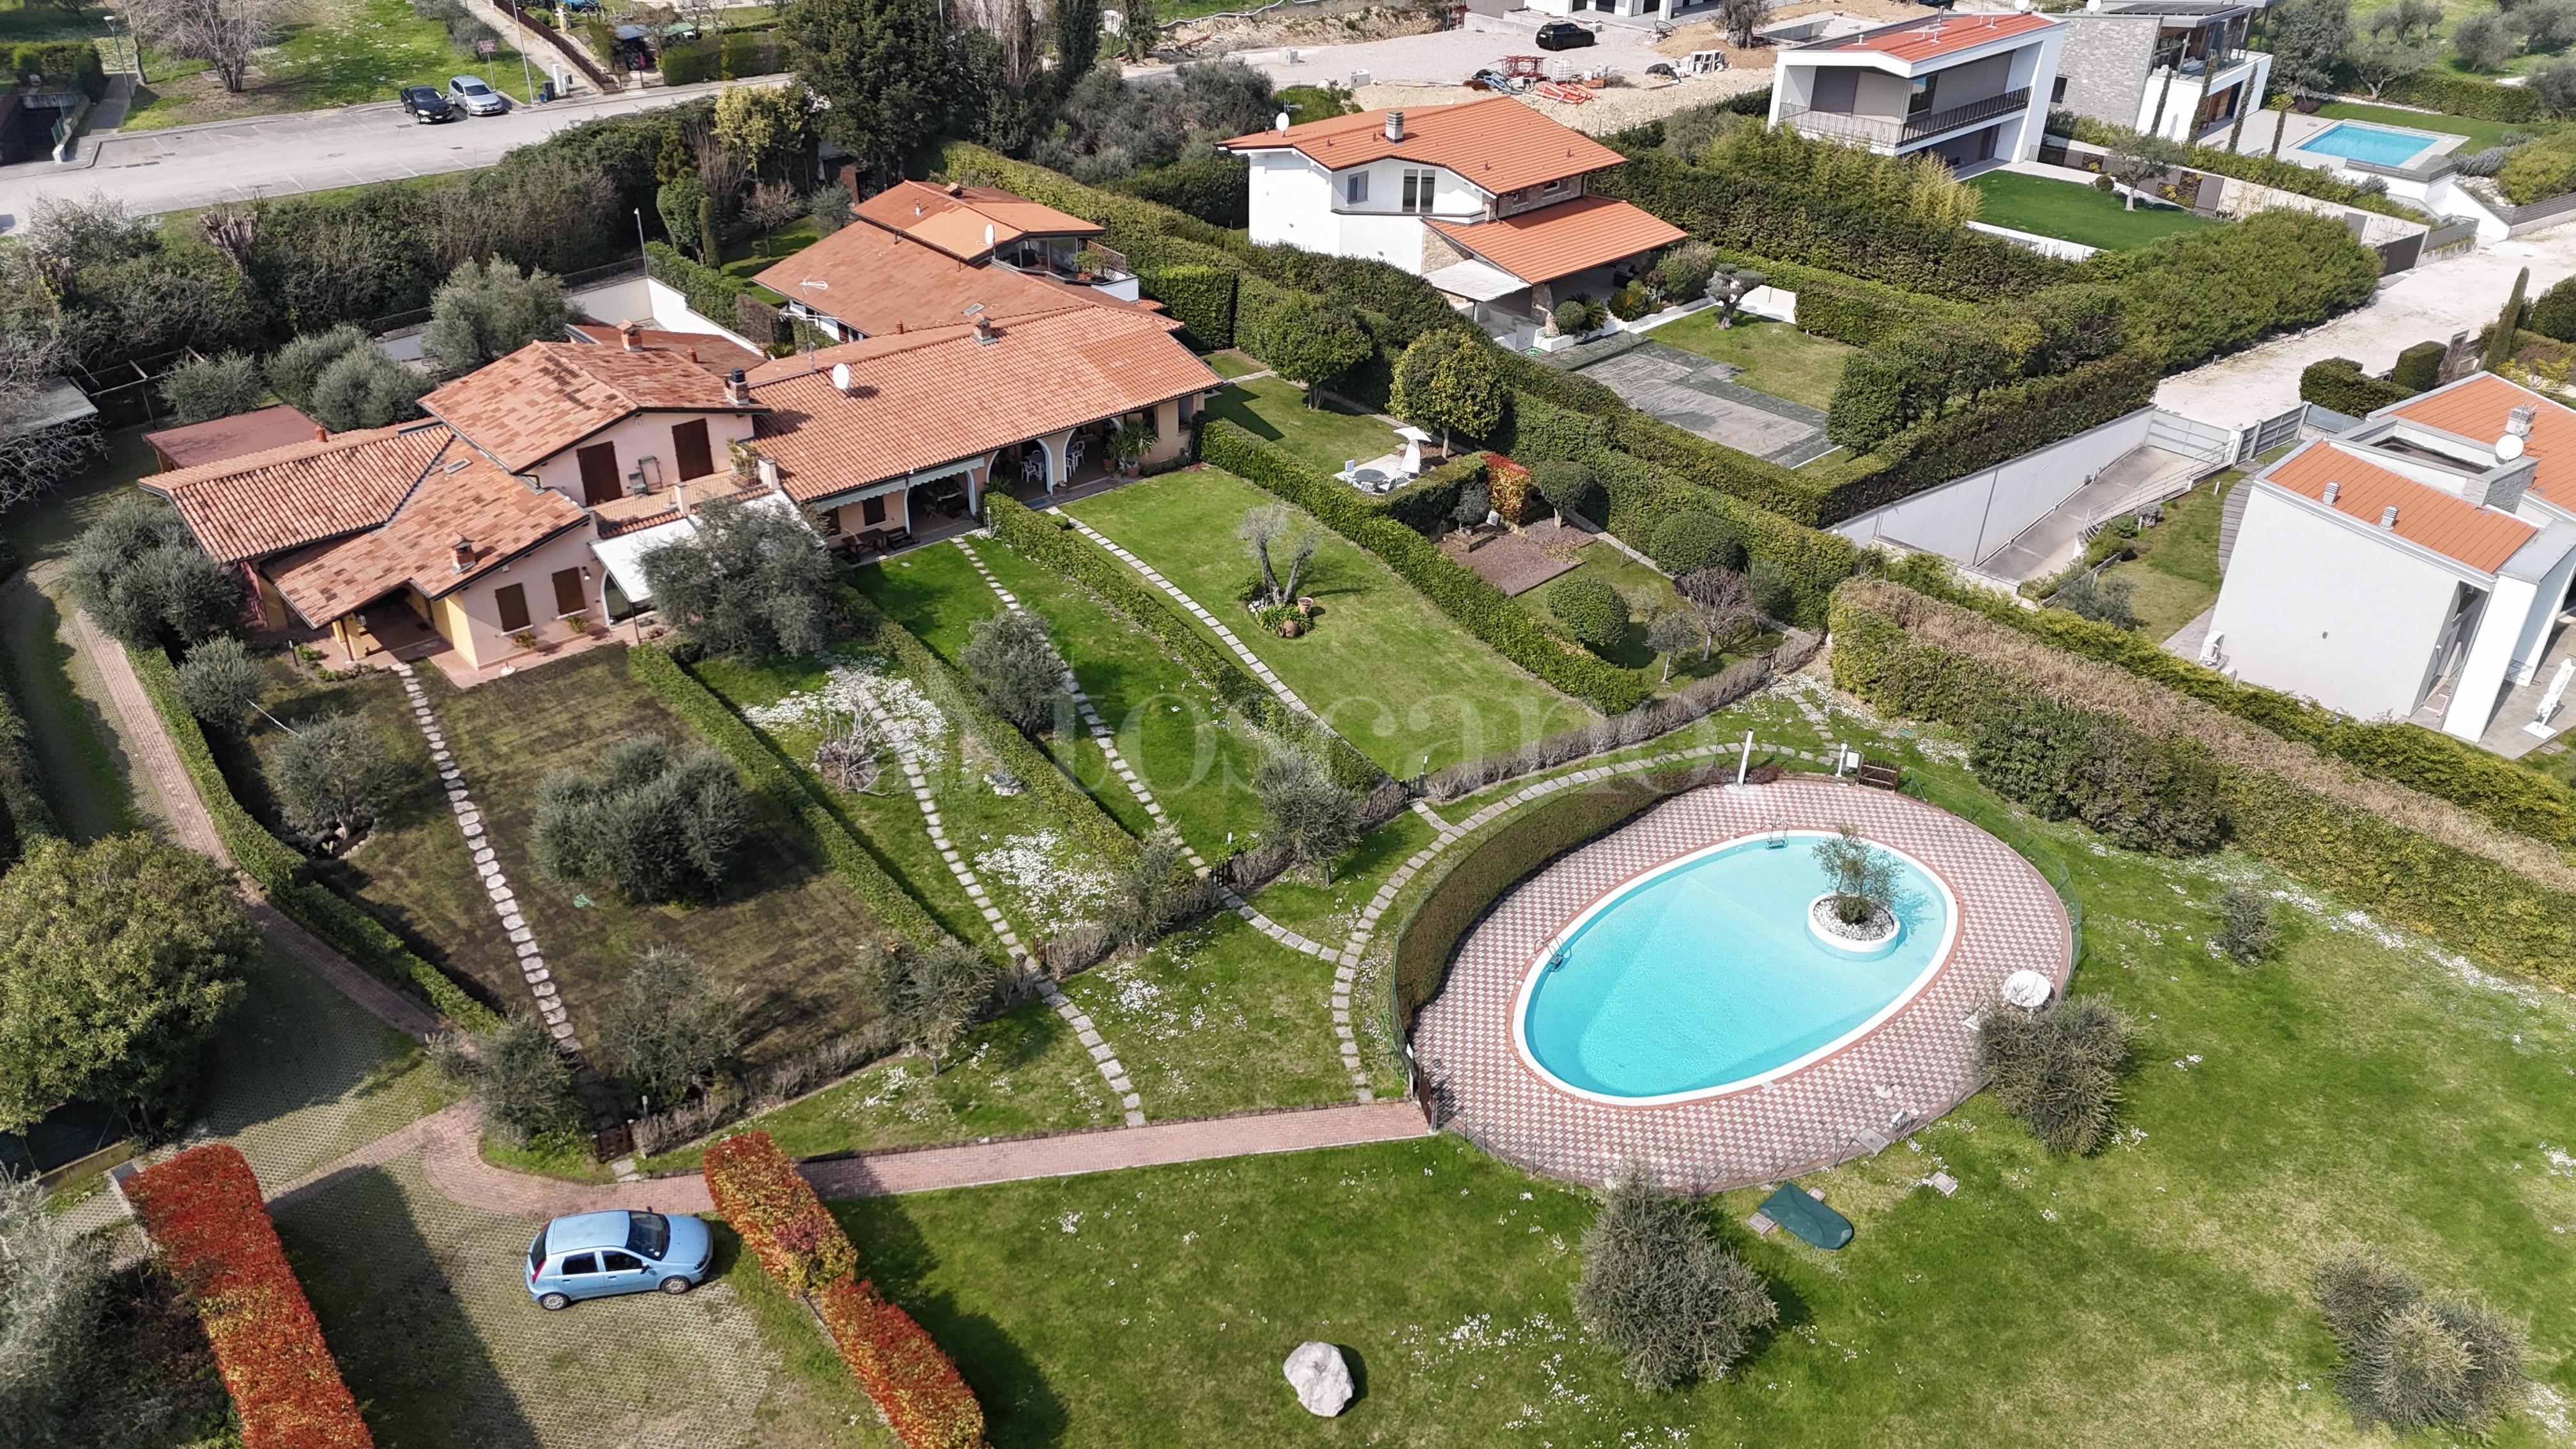 Villa Plurifamiliare a Soiano del Lago in via X giornate